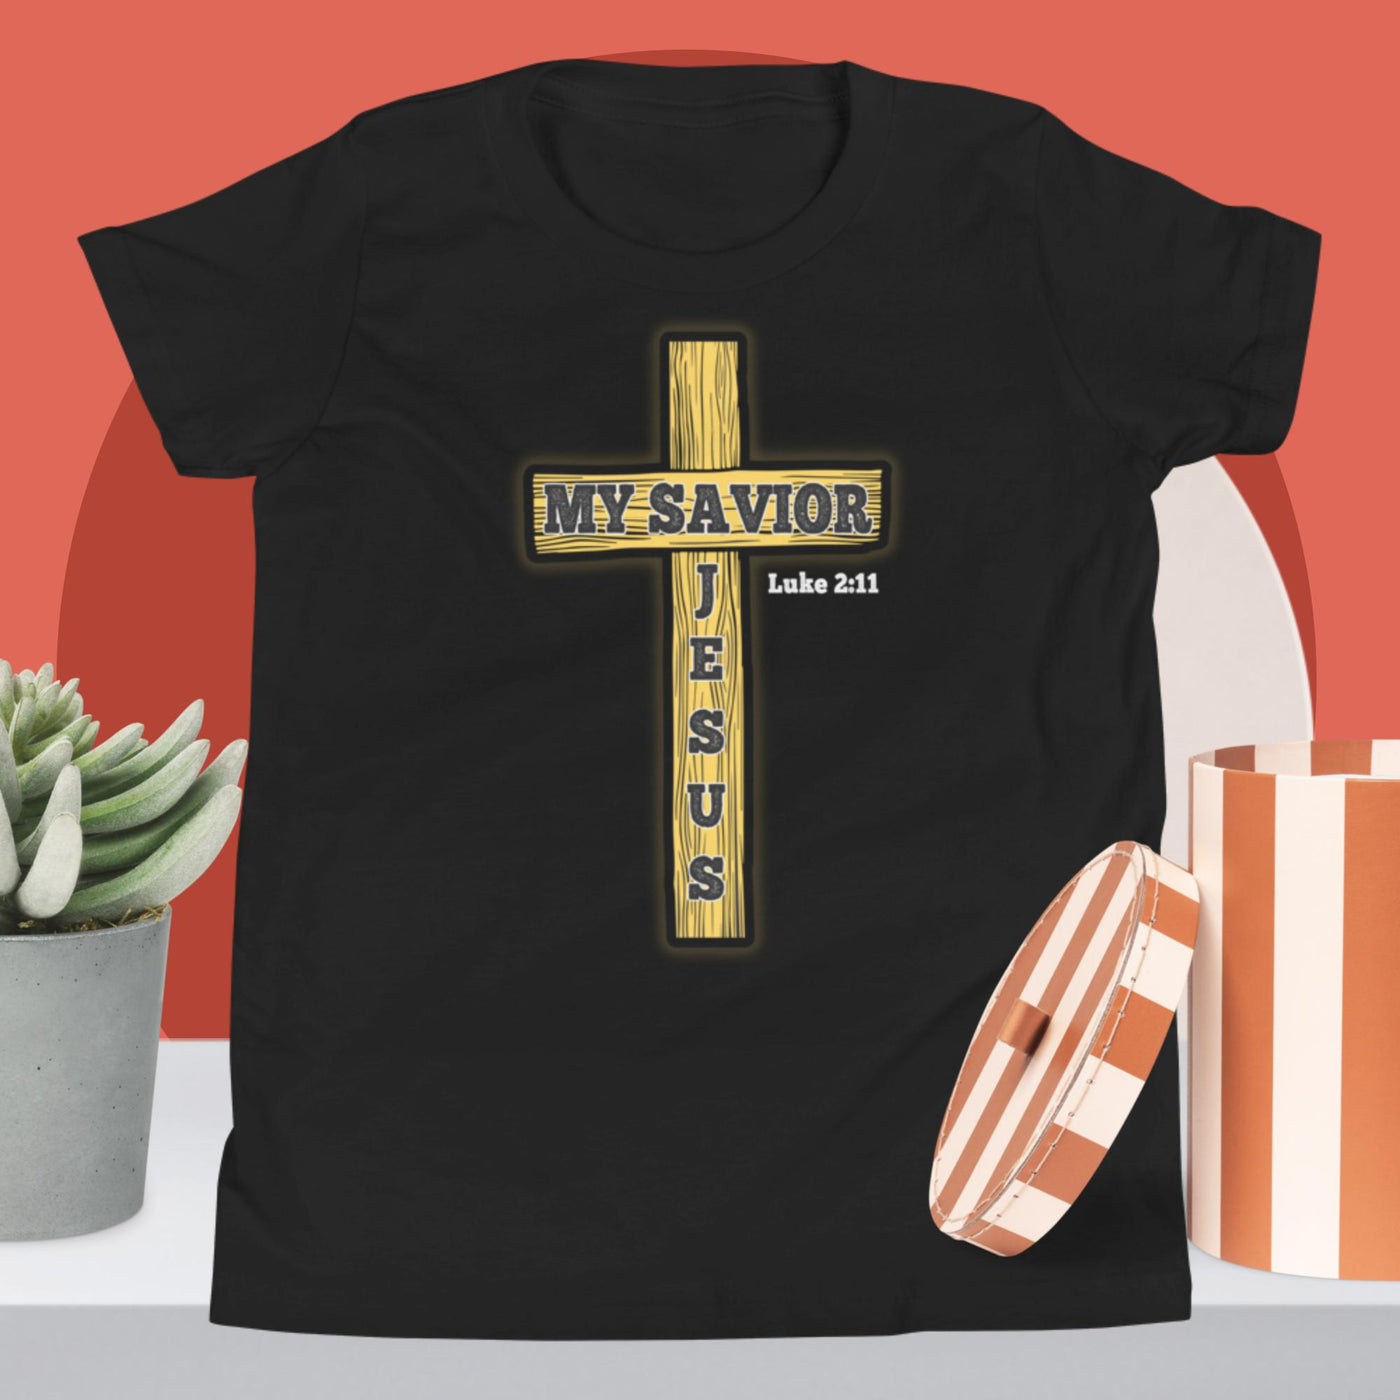 F&H My Savior Jesus Youth Short Sleeve T-Shirt